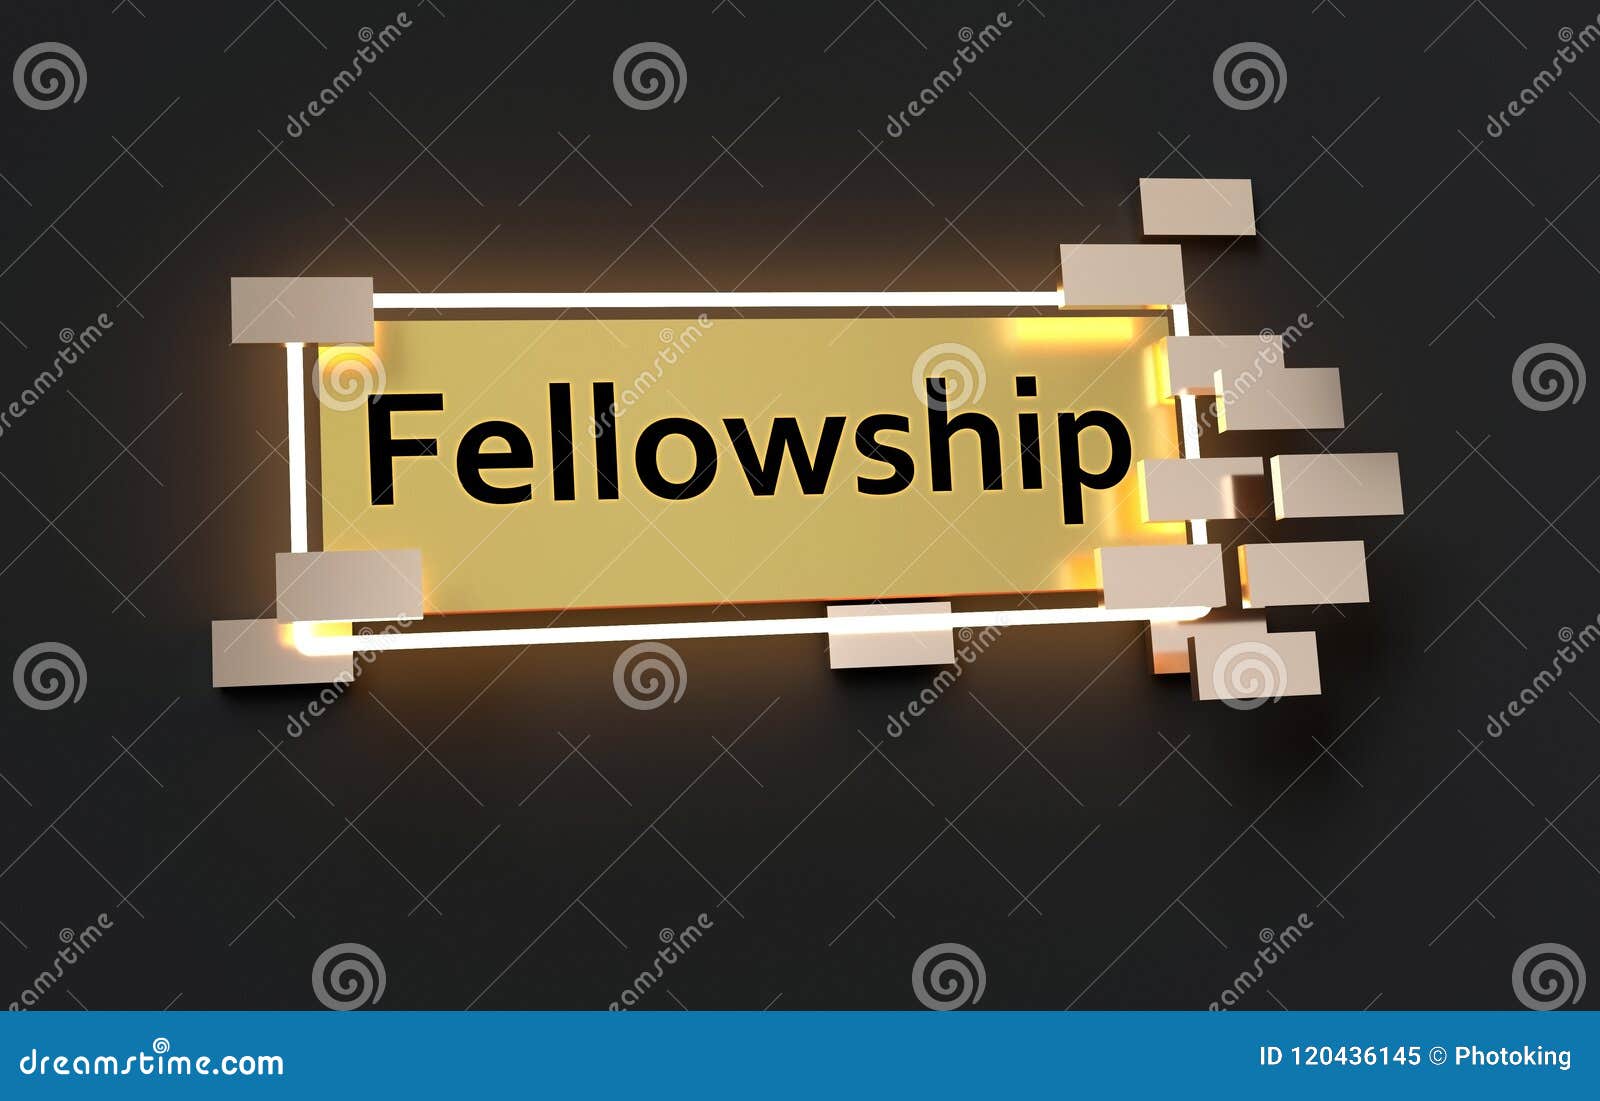 fellowship modern golden sign